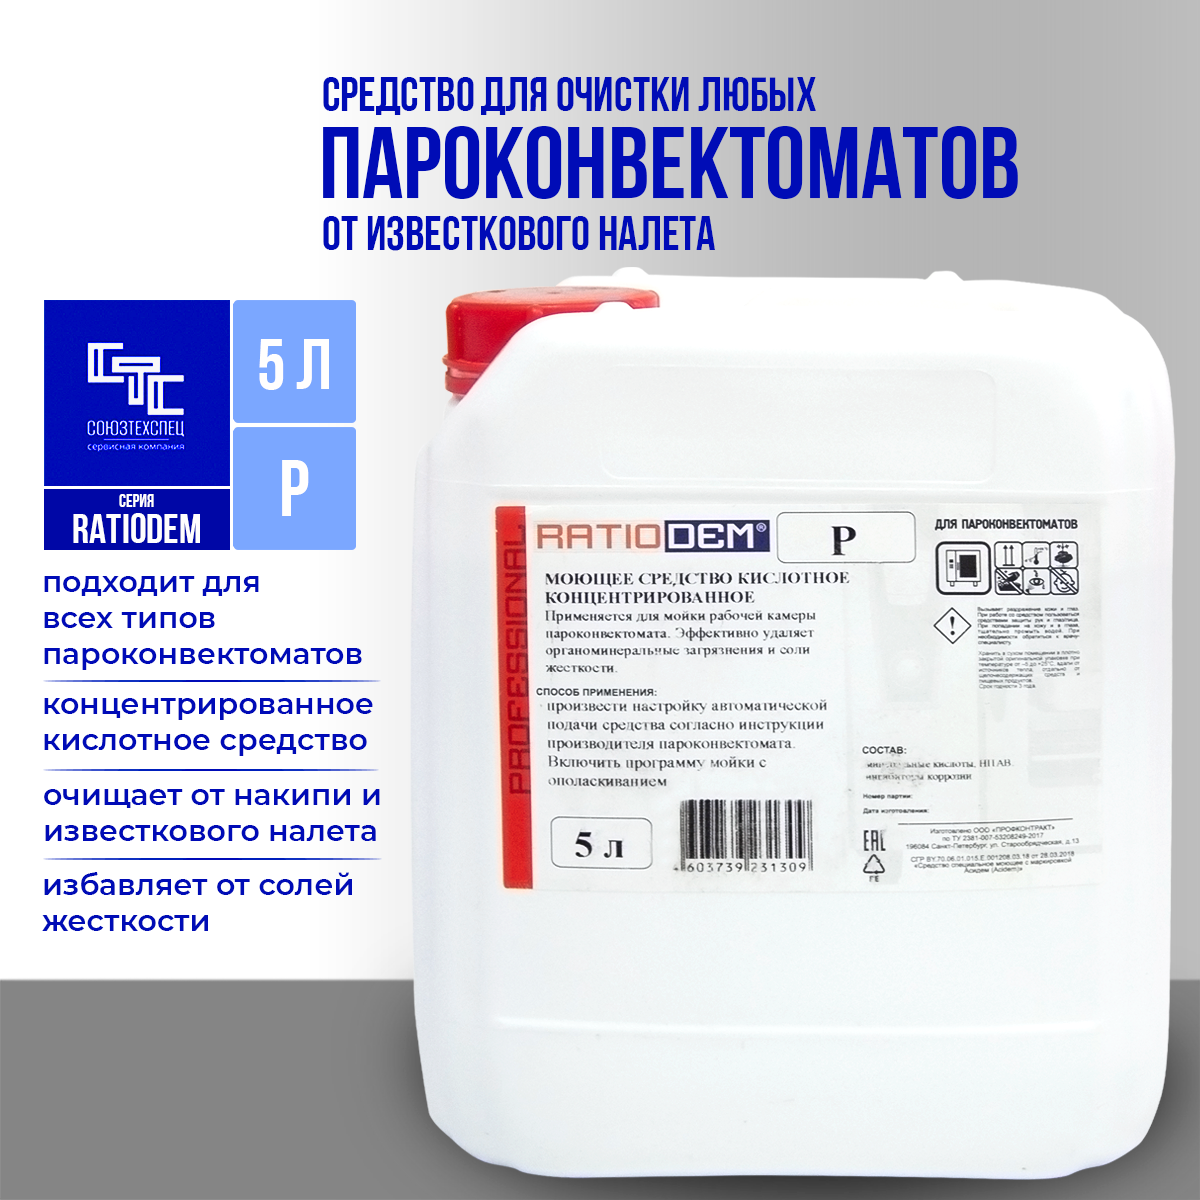 Средство для удаления минеральных загрязнений, солей жесткости в камере пароконвектомата RatioDem P, 5 литров